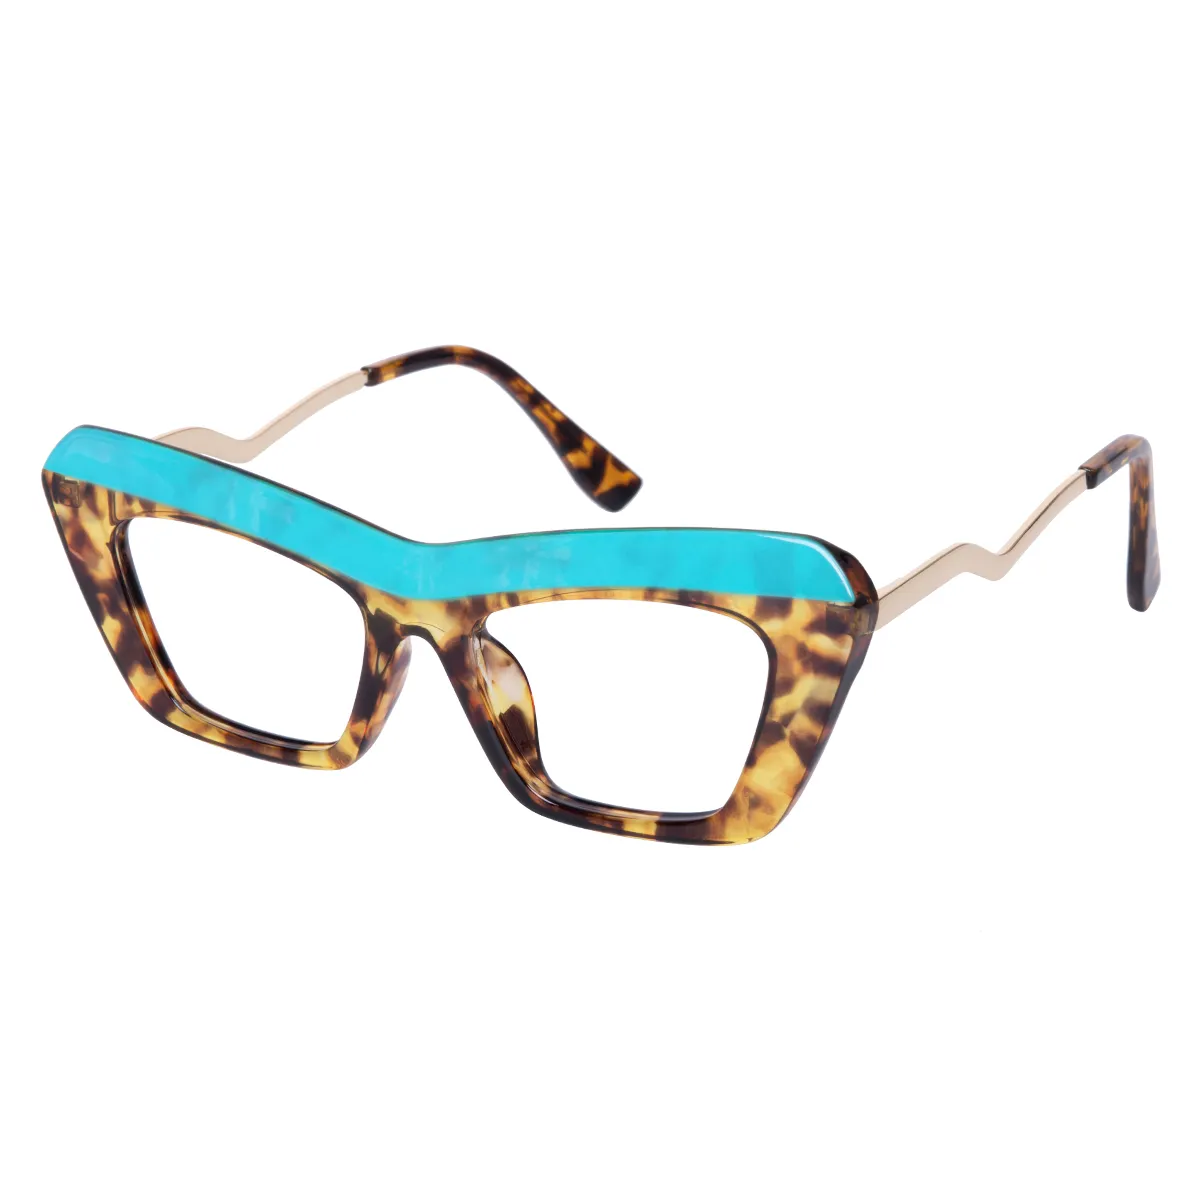 Elowen - Cat-eye Blue-Tortoiseshell Glasses for Women